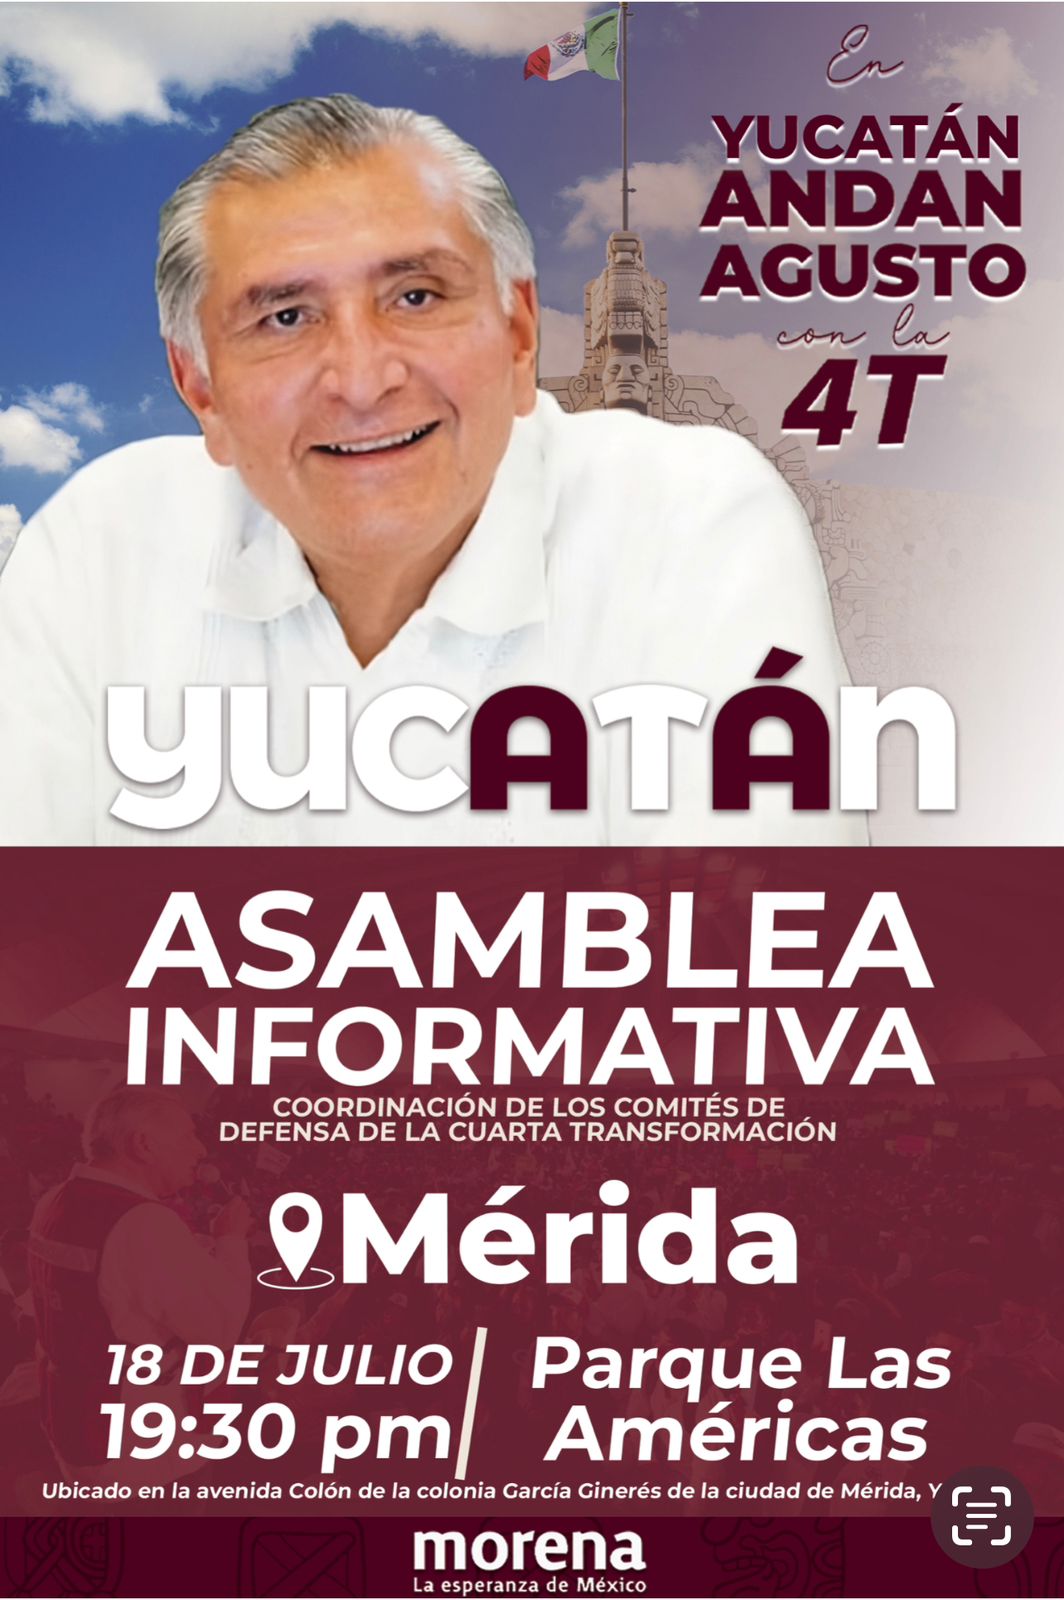 Agenda de Adán Augusto a Yucatán